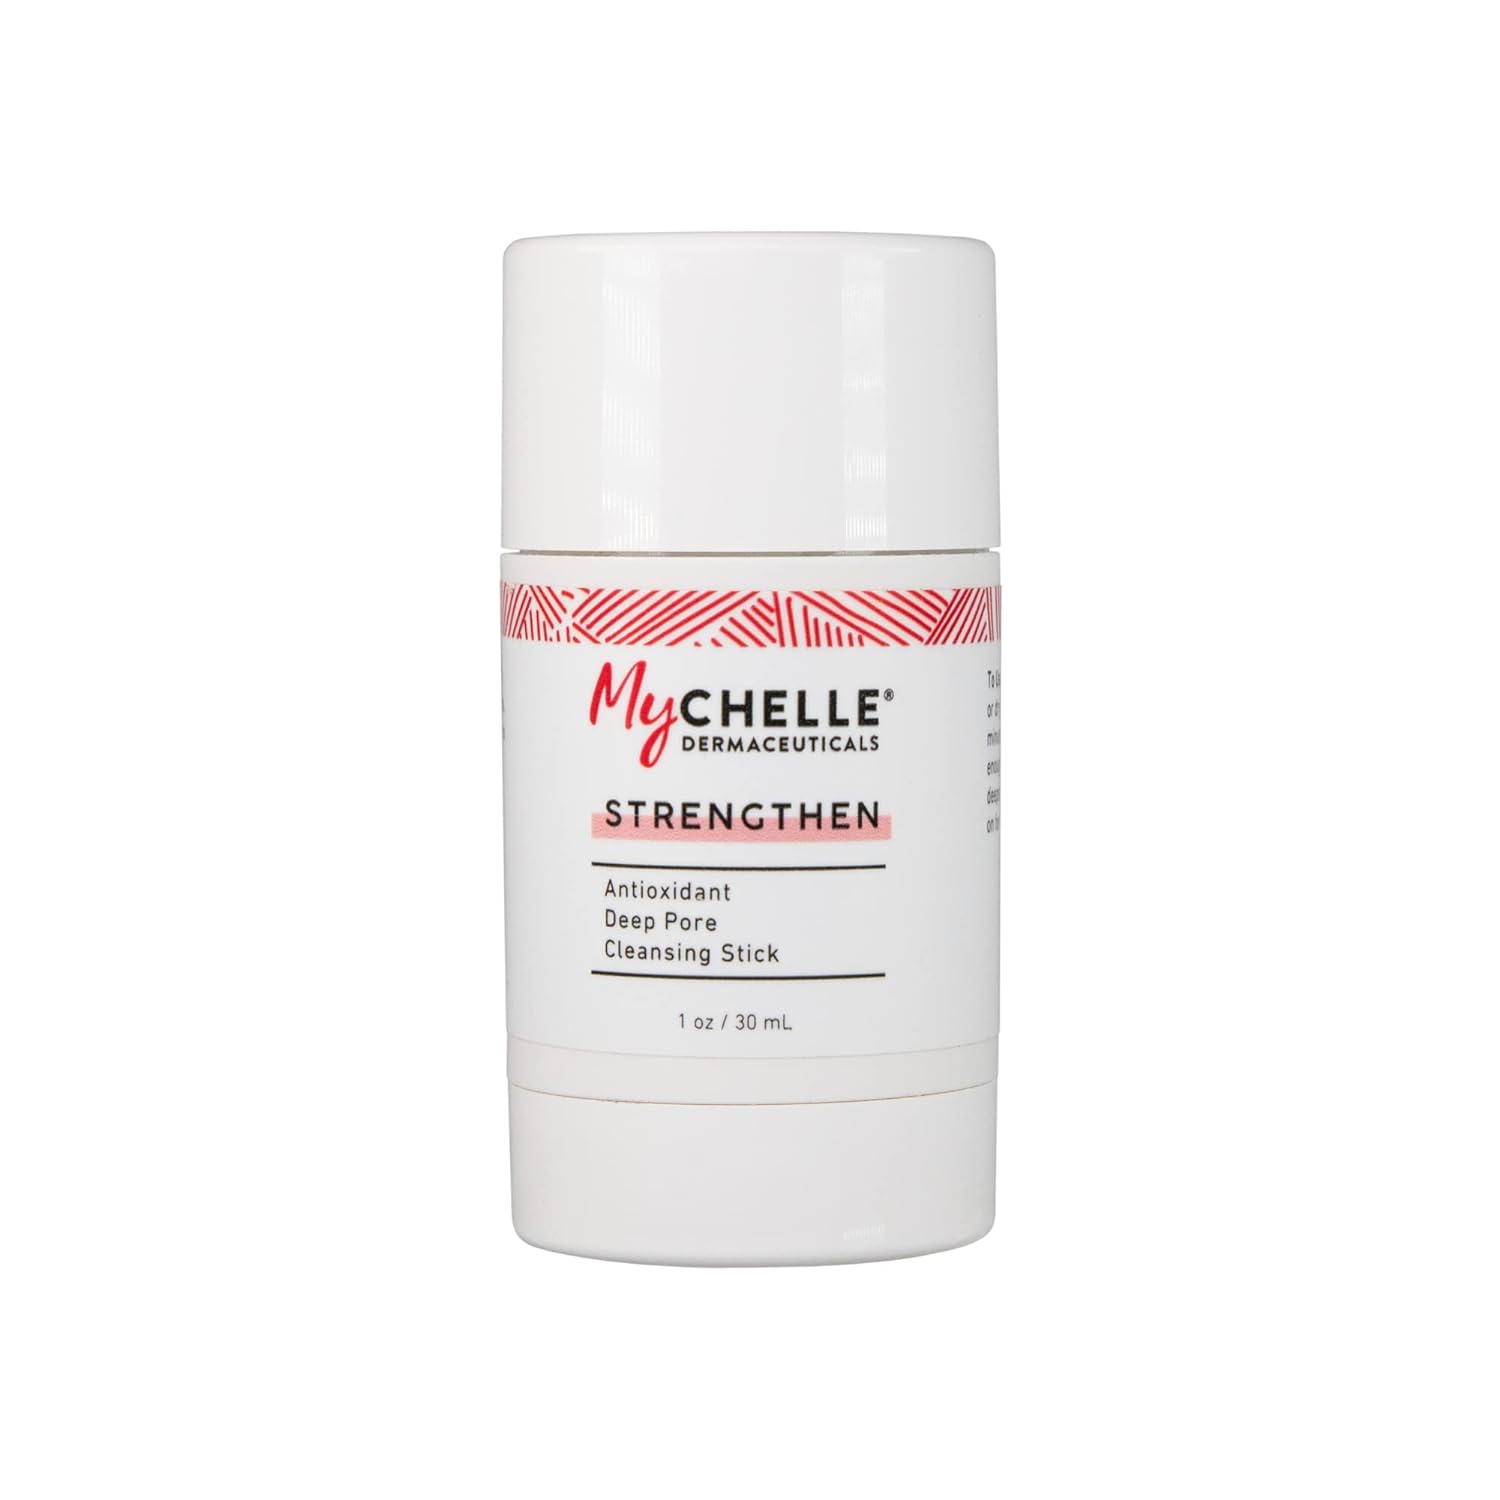 MyChelle Dermaceuticals Antioxidant Deep Pore Cleansing Stick